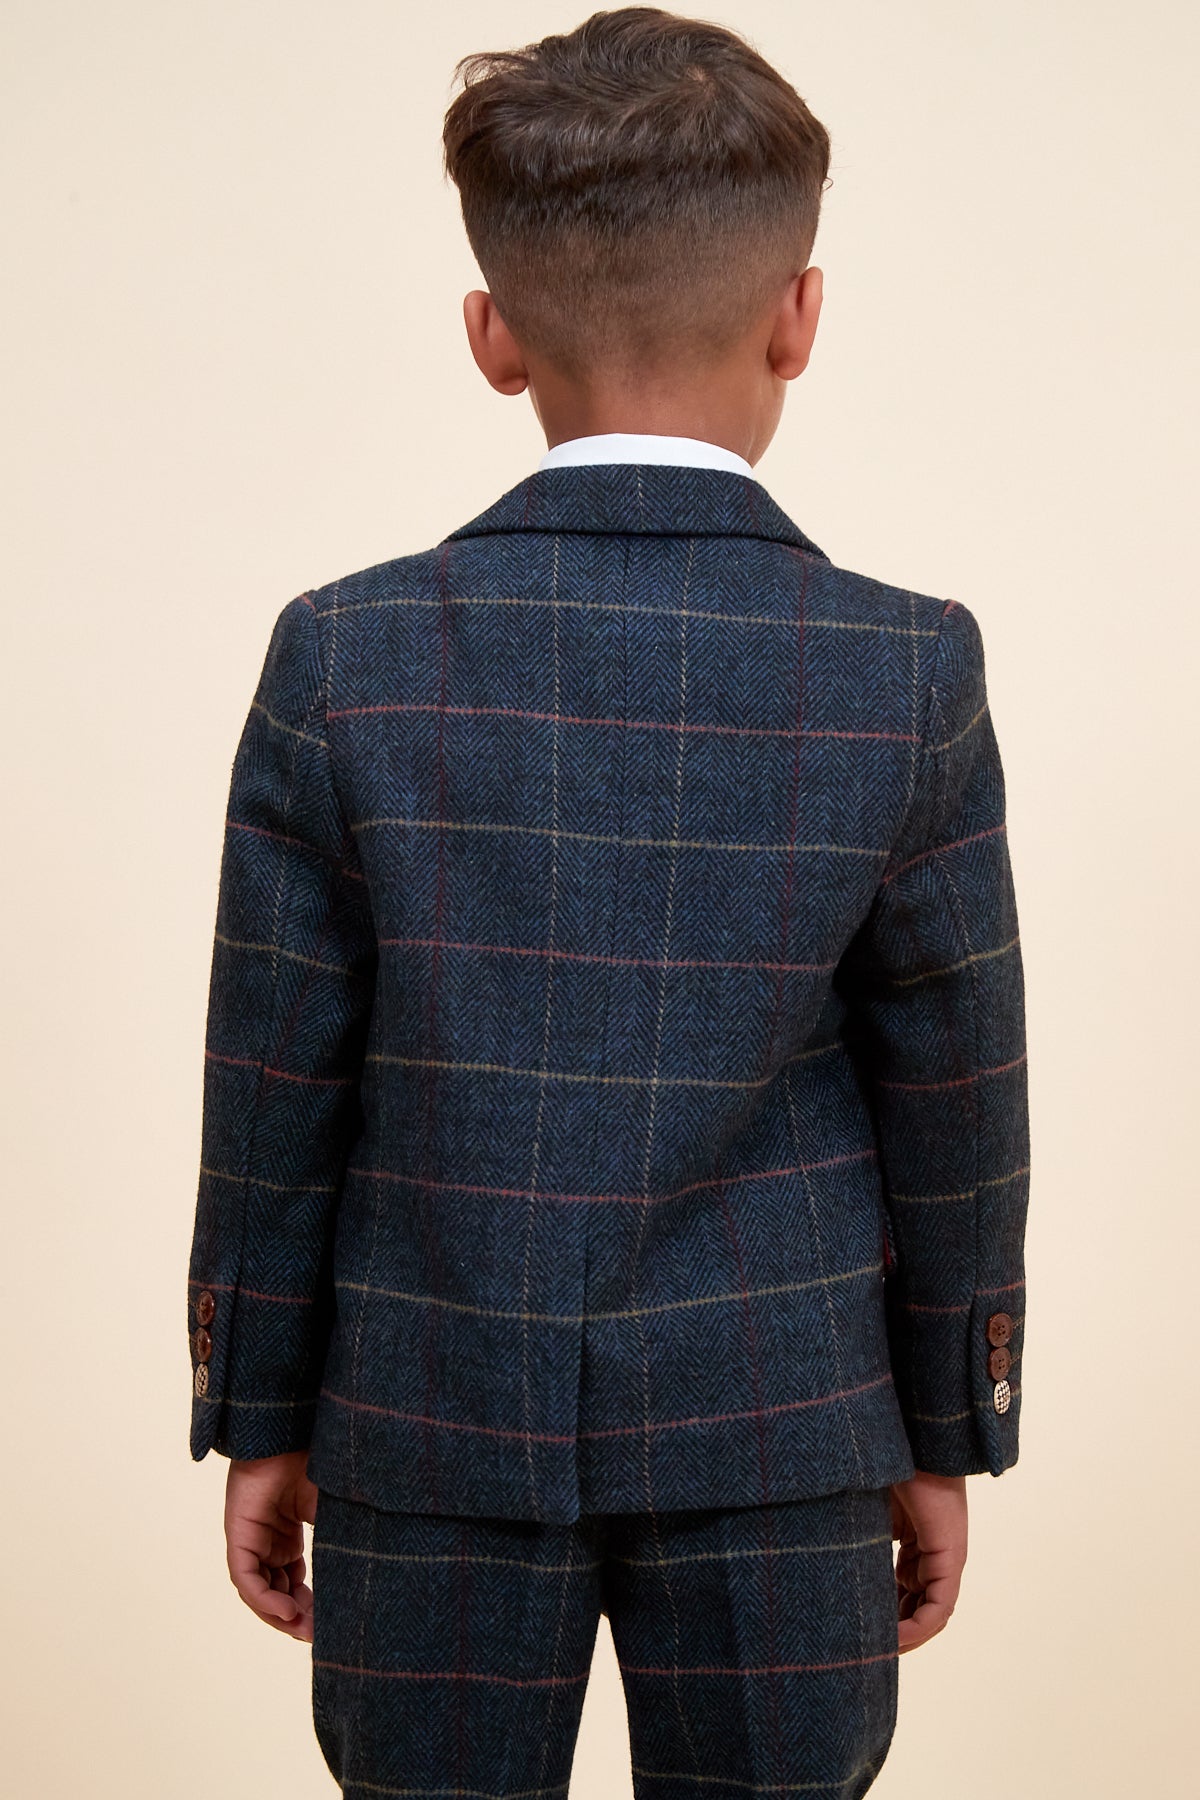 ETON - Children's Navy Blue Tweed Check Three Piece Suit-Childrens Suits-marcdarcy-Marc Darcy